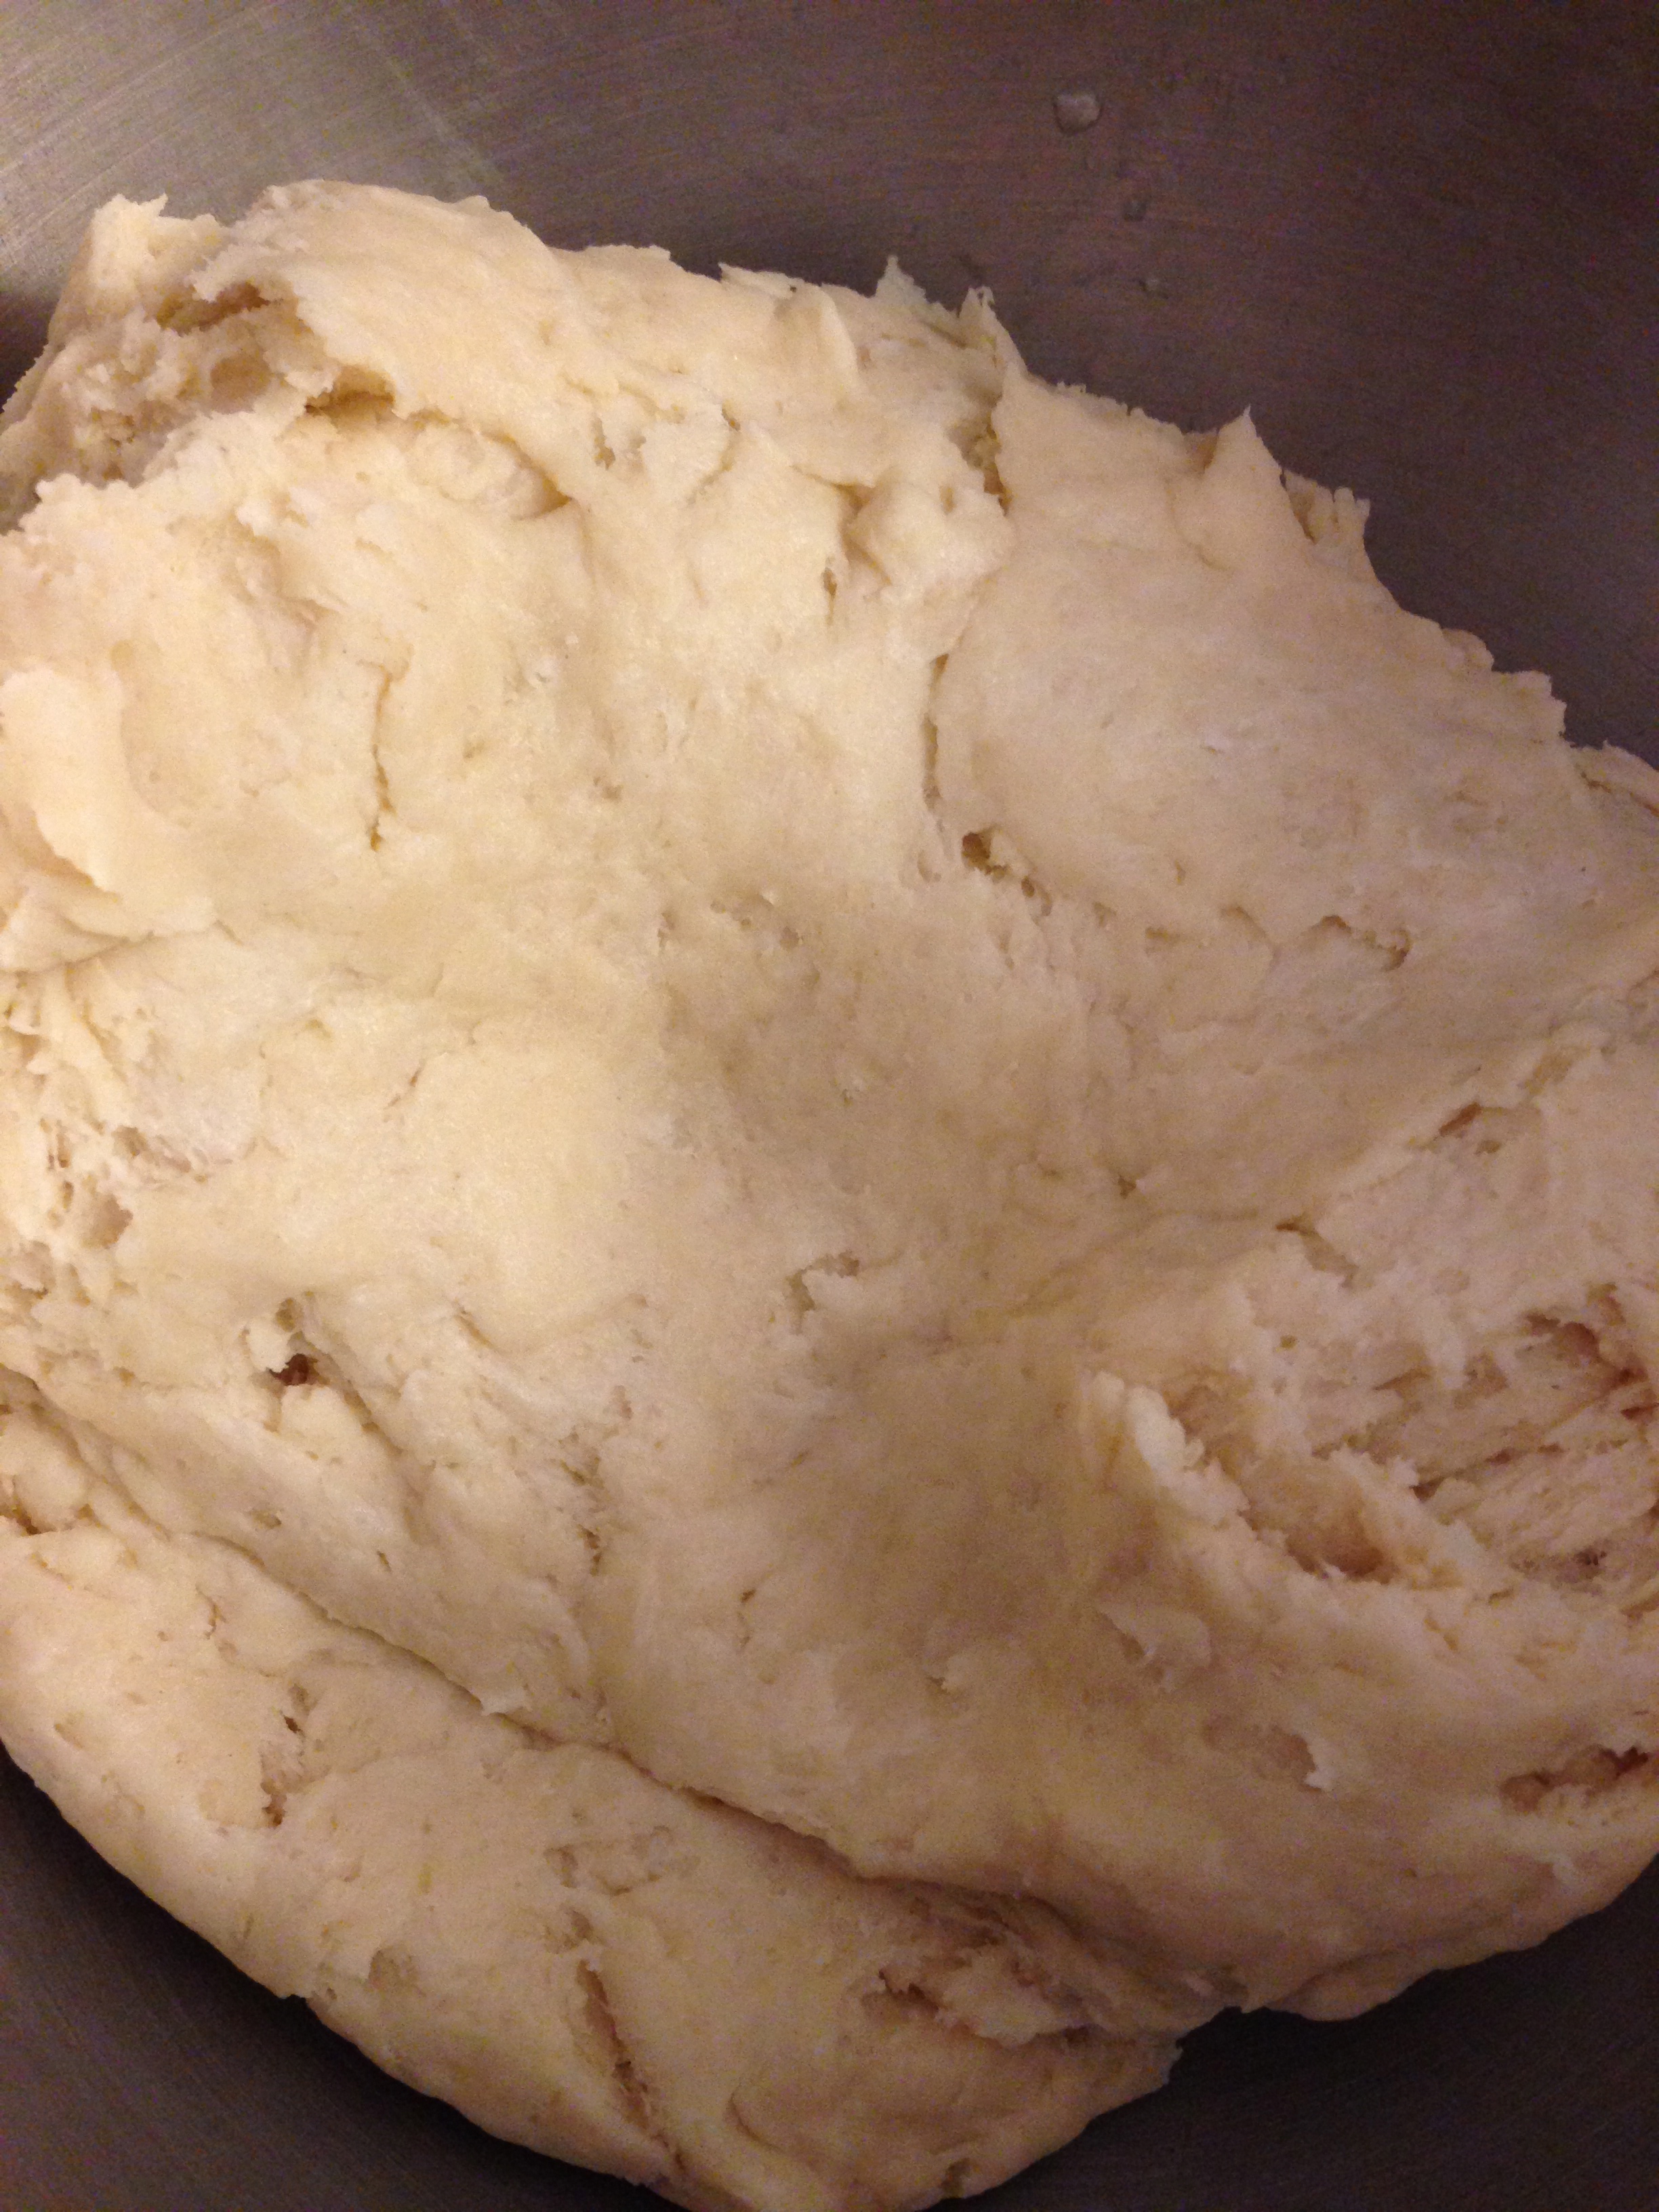 Looks like dough!